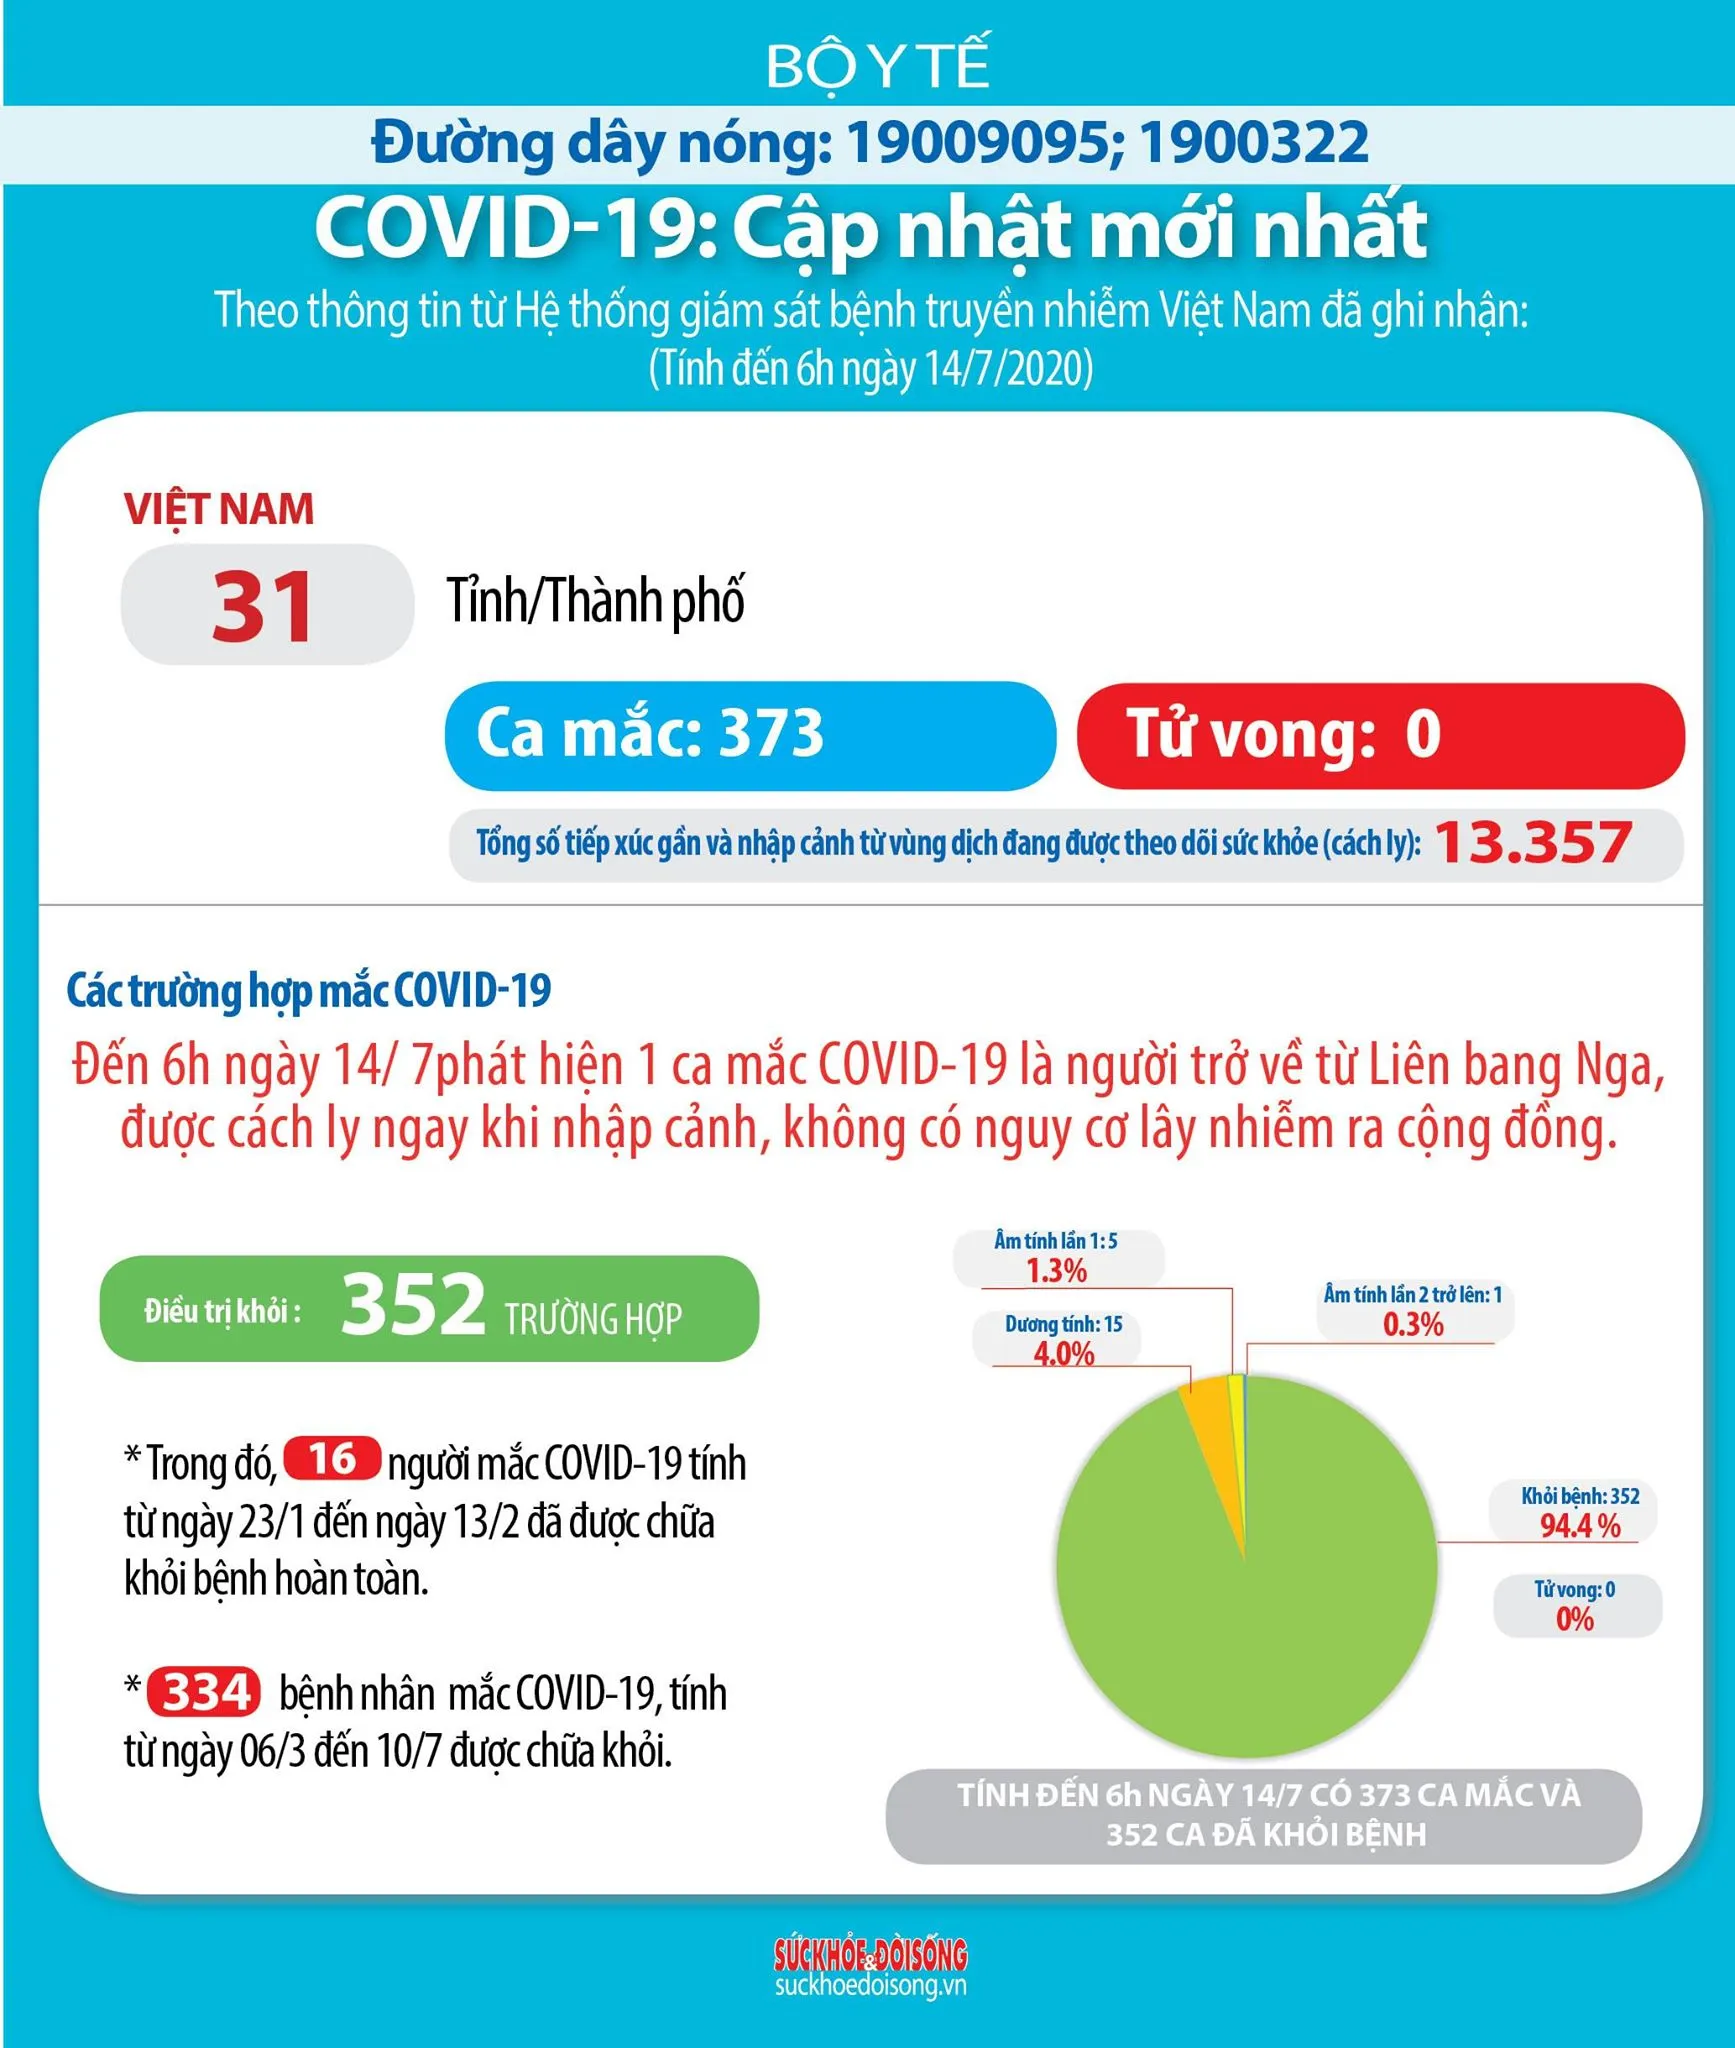 Sáng 14/7 Việt Nam ghi nhận thêm 1 ca mắc COVID-19